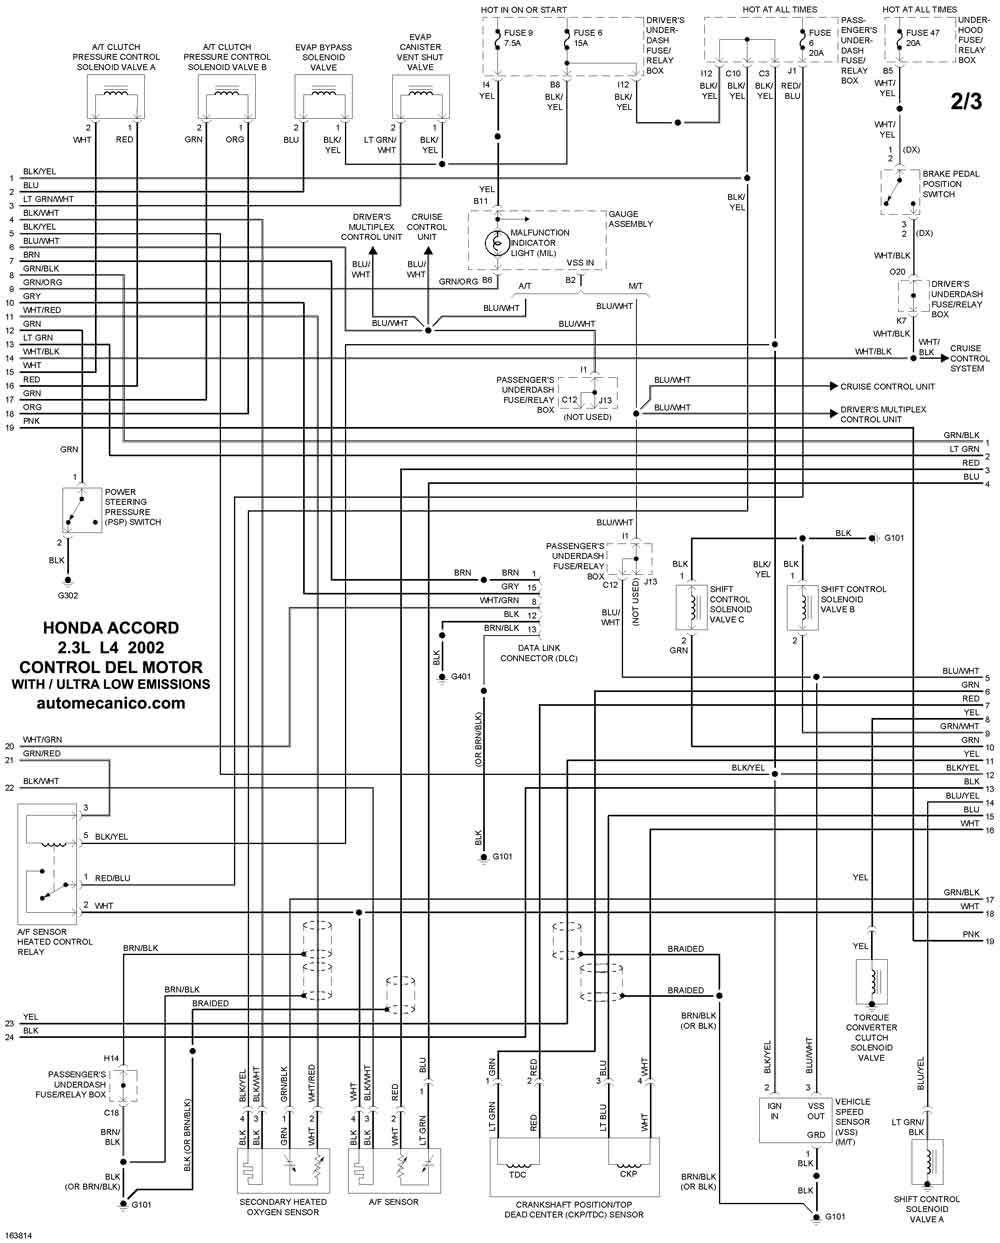 HONDA - Diagramas control del motor 2002 - Graphics - Esquemas | Vehiculos  - Motores - Componentes | Mecanica automotriz